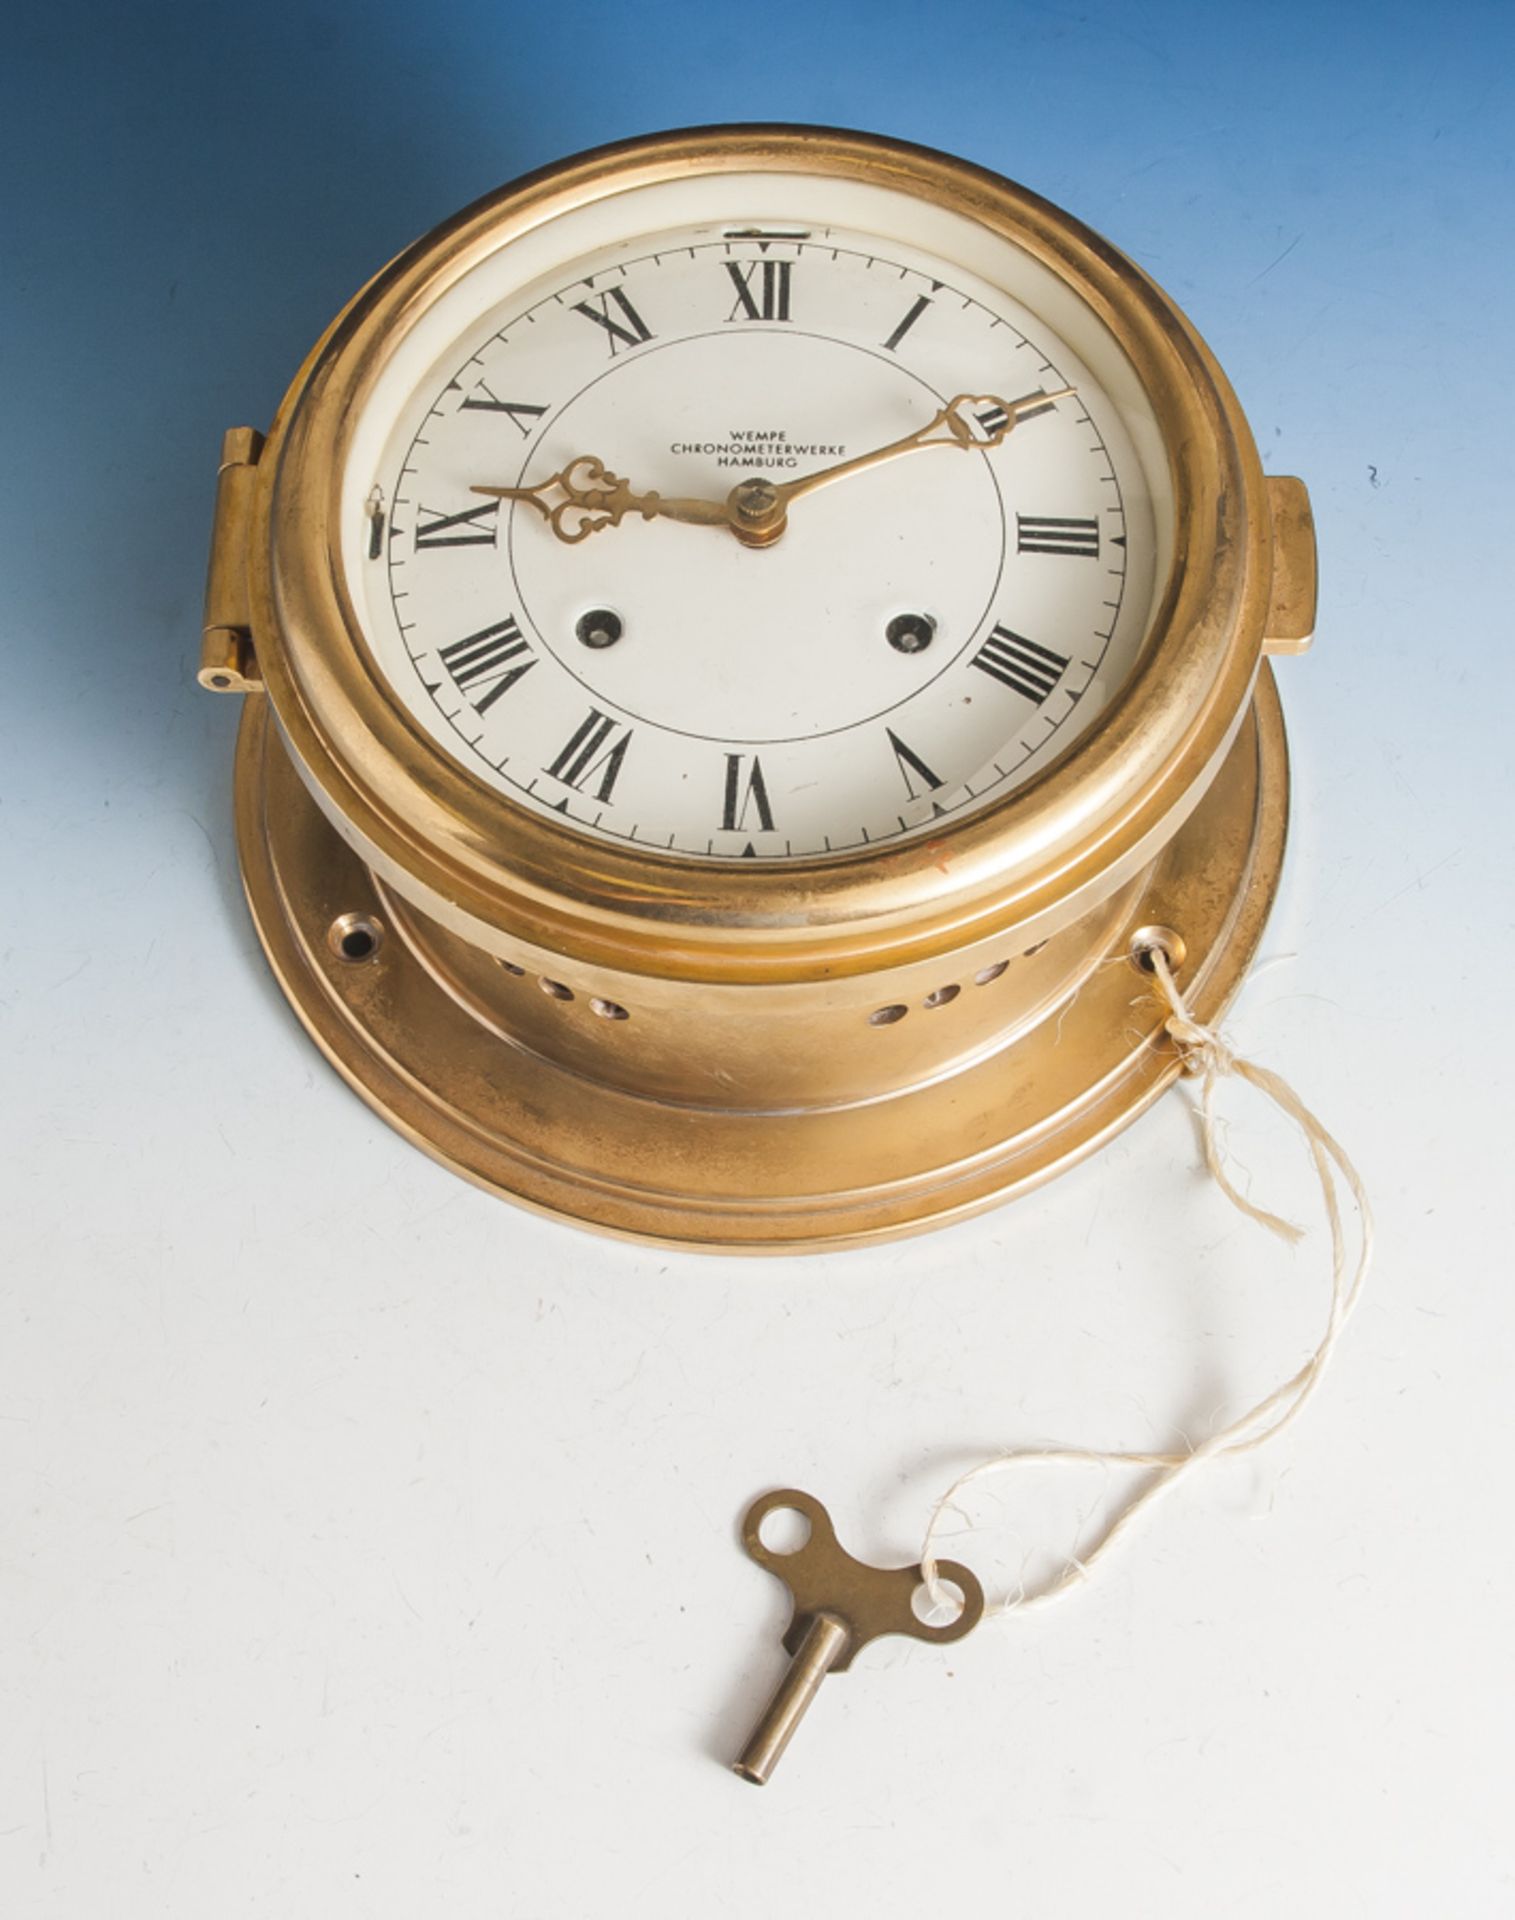 Schiffschronometer, Wempe Chronometerwerke Hamburg, Messinggehäuse mit scharniertem undverglasten